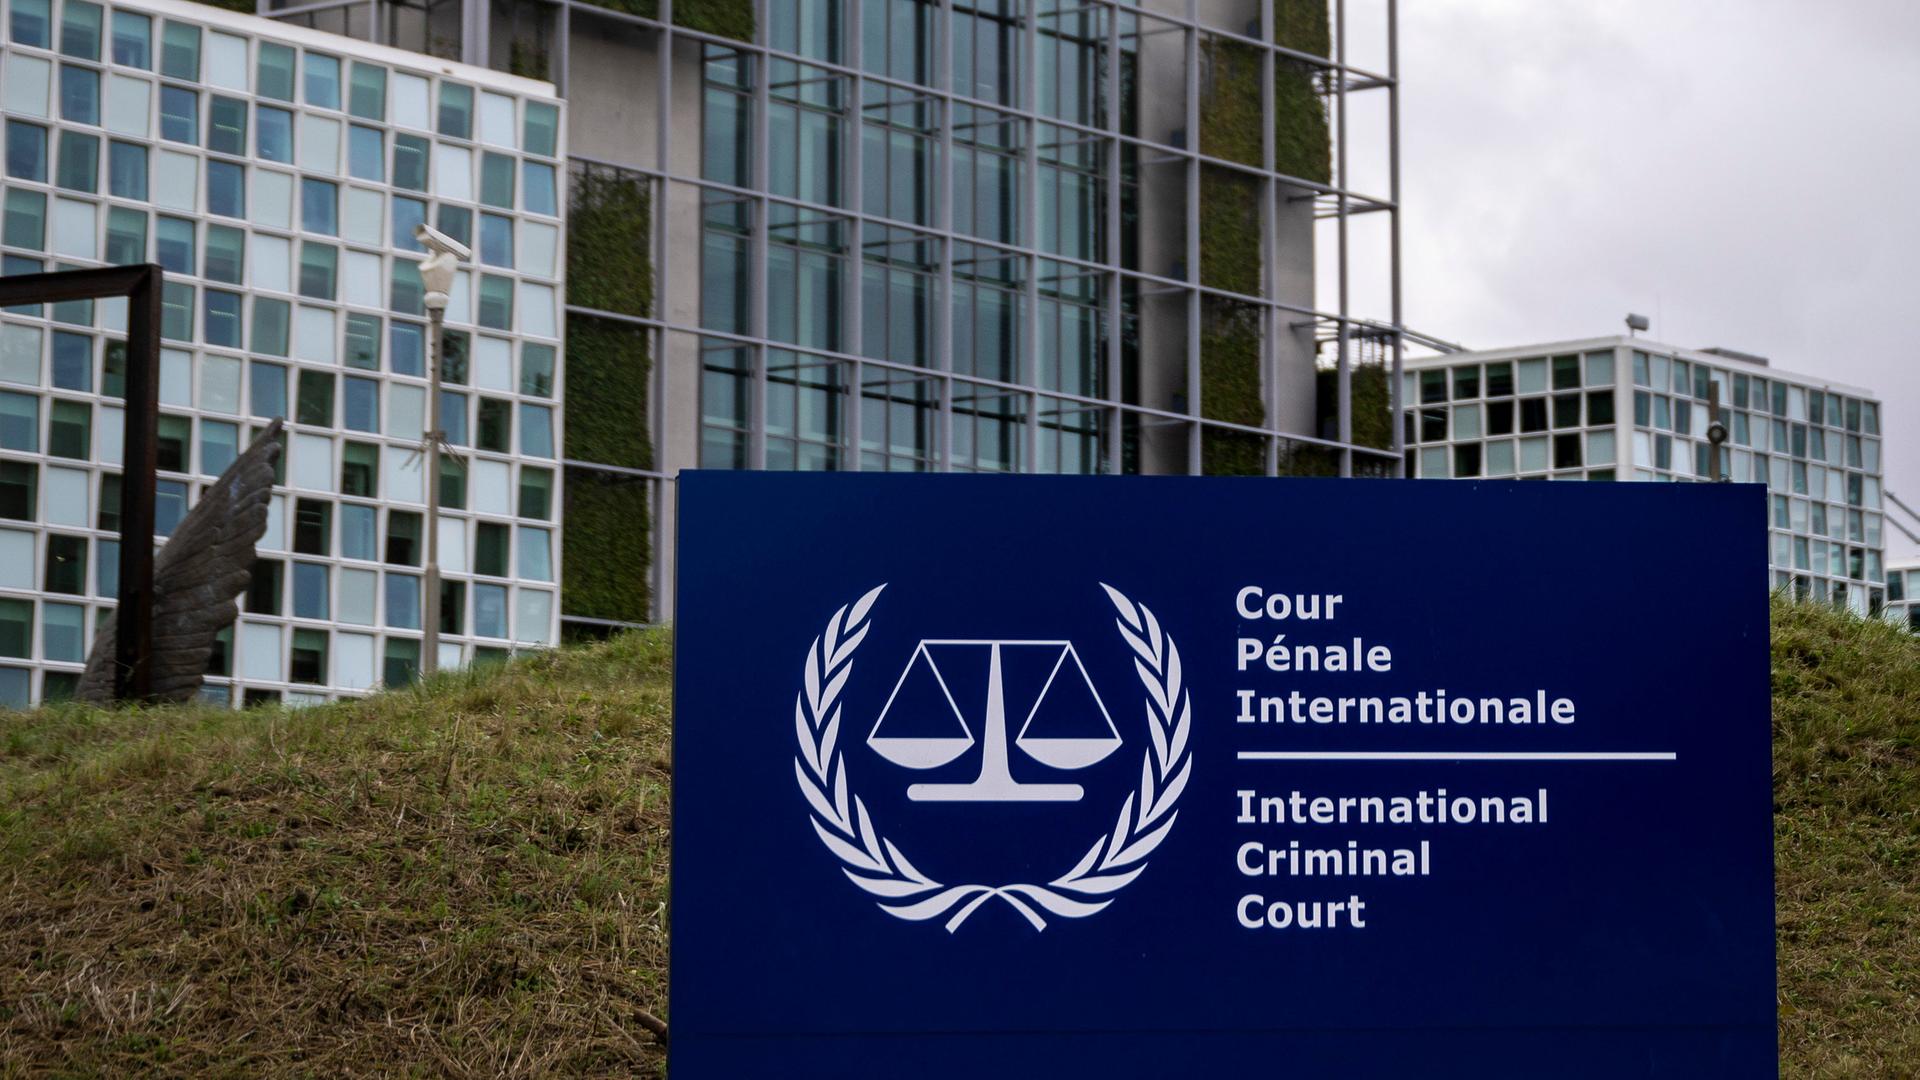 Eine grosse Tafel mit dem Symbol und dem Schriftzug des Internationalen Strafgerichtshofs (IStGH) markiert den Sitz des Gerichts im Stadtteil Scheveningen von Den Haag (Niederlande). Der moderne Neubau beherbergt den IStGH seit April 2016. Der IStGH wurde 1998 durch einen völkerrechtlichen Vertrag1998 auf Dauer eingerichtet. Er ist kein Teil der Vereinten Nationen.